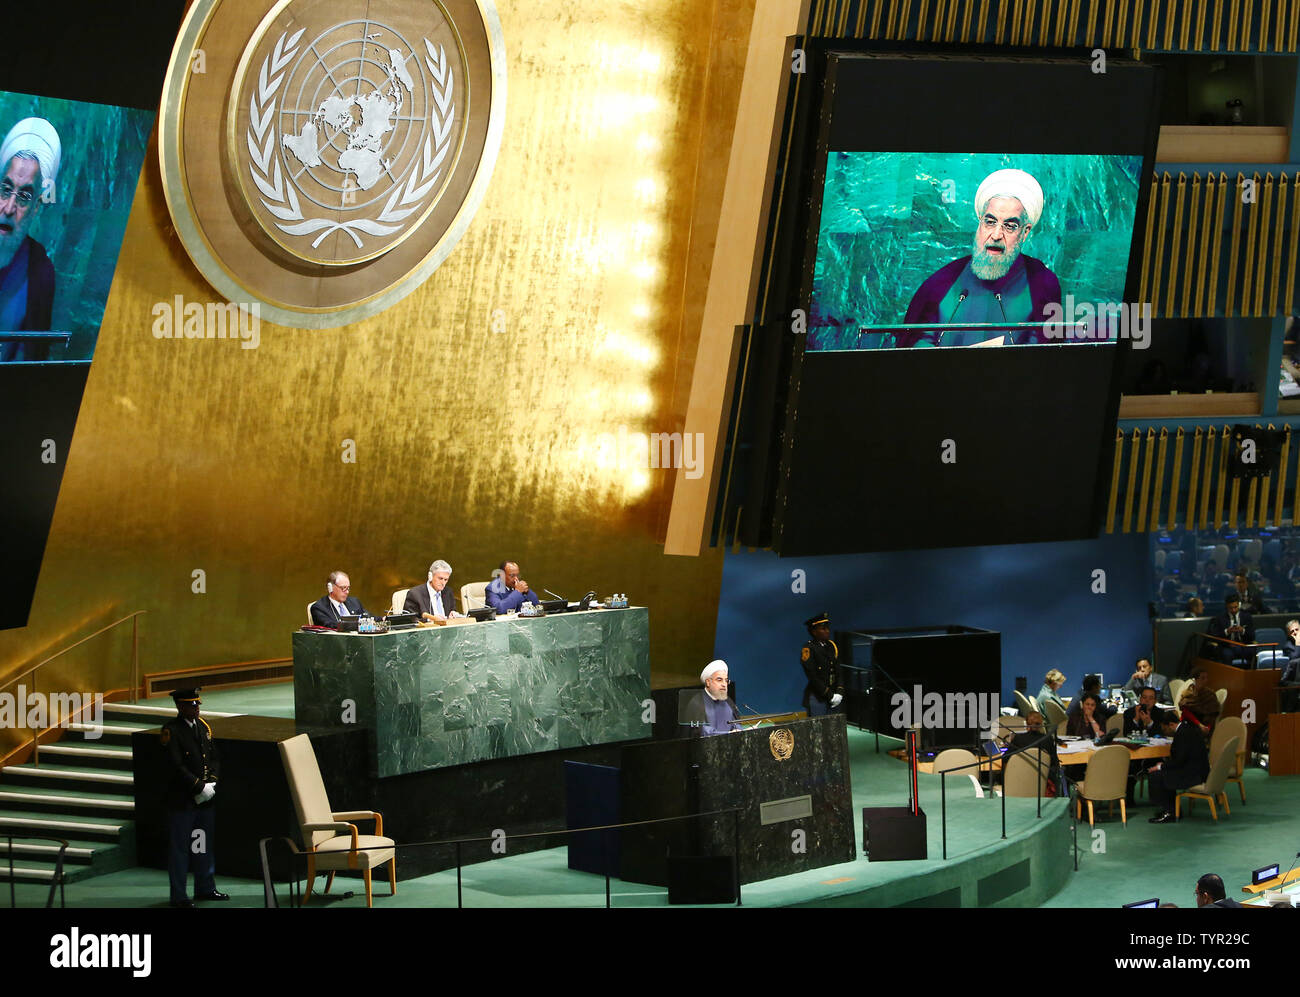 Hassan Rohani, président de l'Iran, traite de la 70e session du débat général de l'Assemblée générale des Nations Unies tenue à l'ONU à New York le 28 septembre 2015. Monika Graff/UPI Banque D'Images